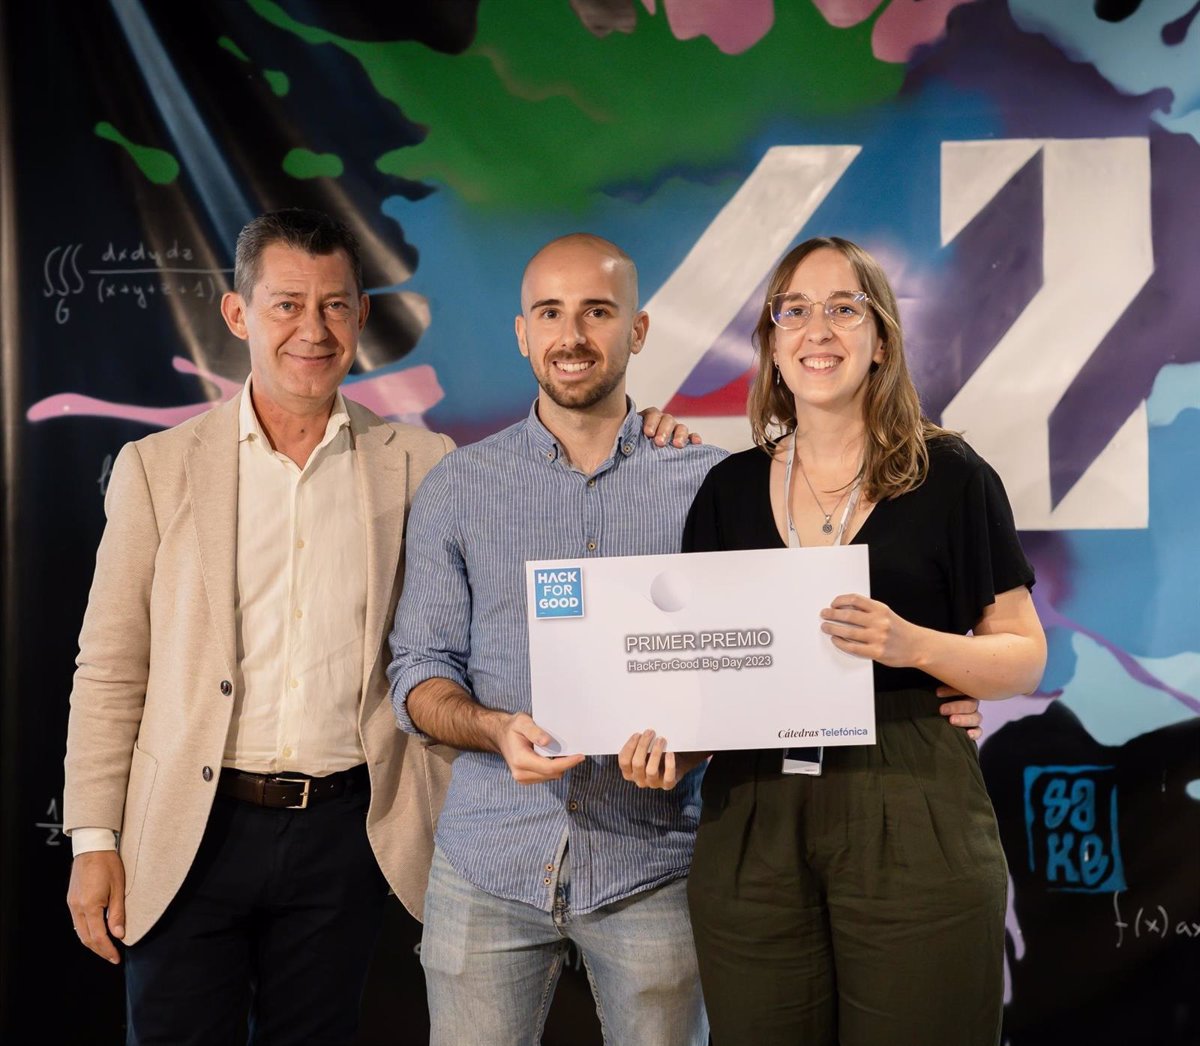 Un proyecto de invernaderos inteligentes de la Universidad de Vigo gana los Premios HackForGood Big Day 2023